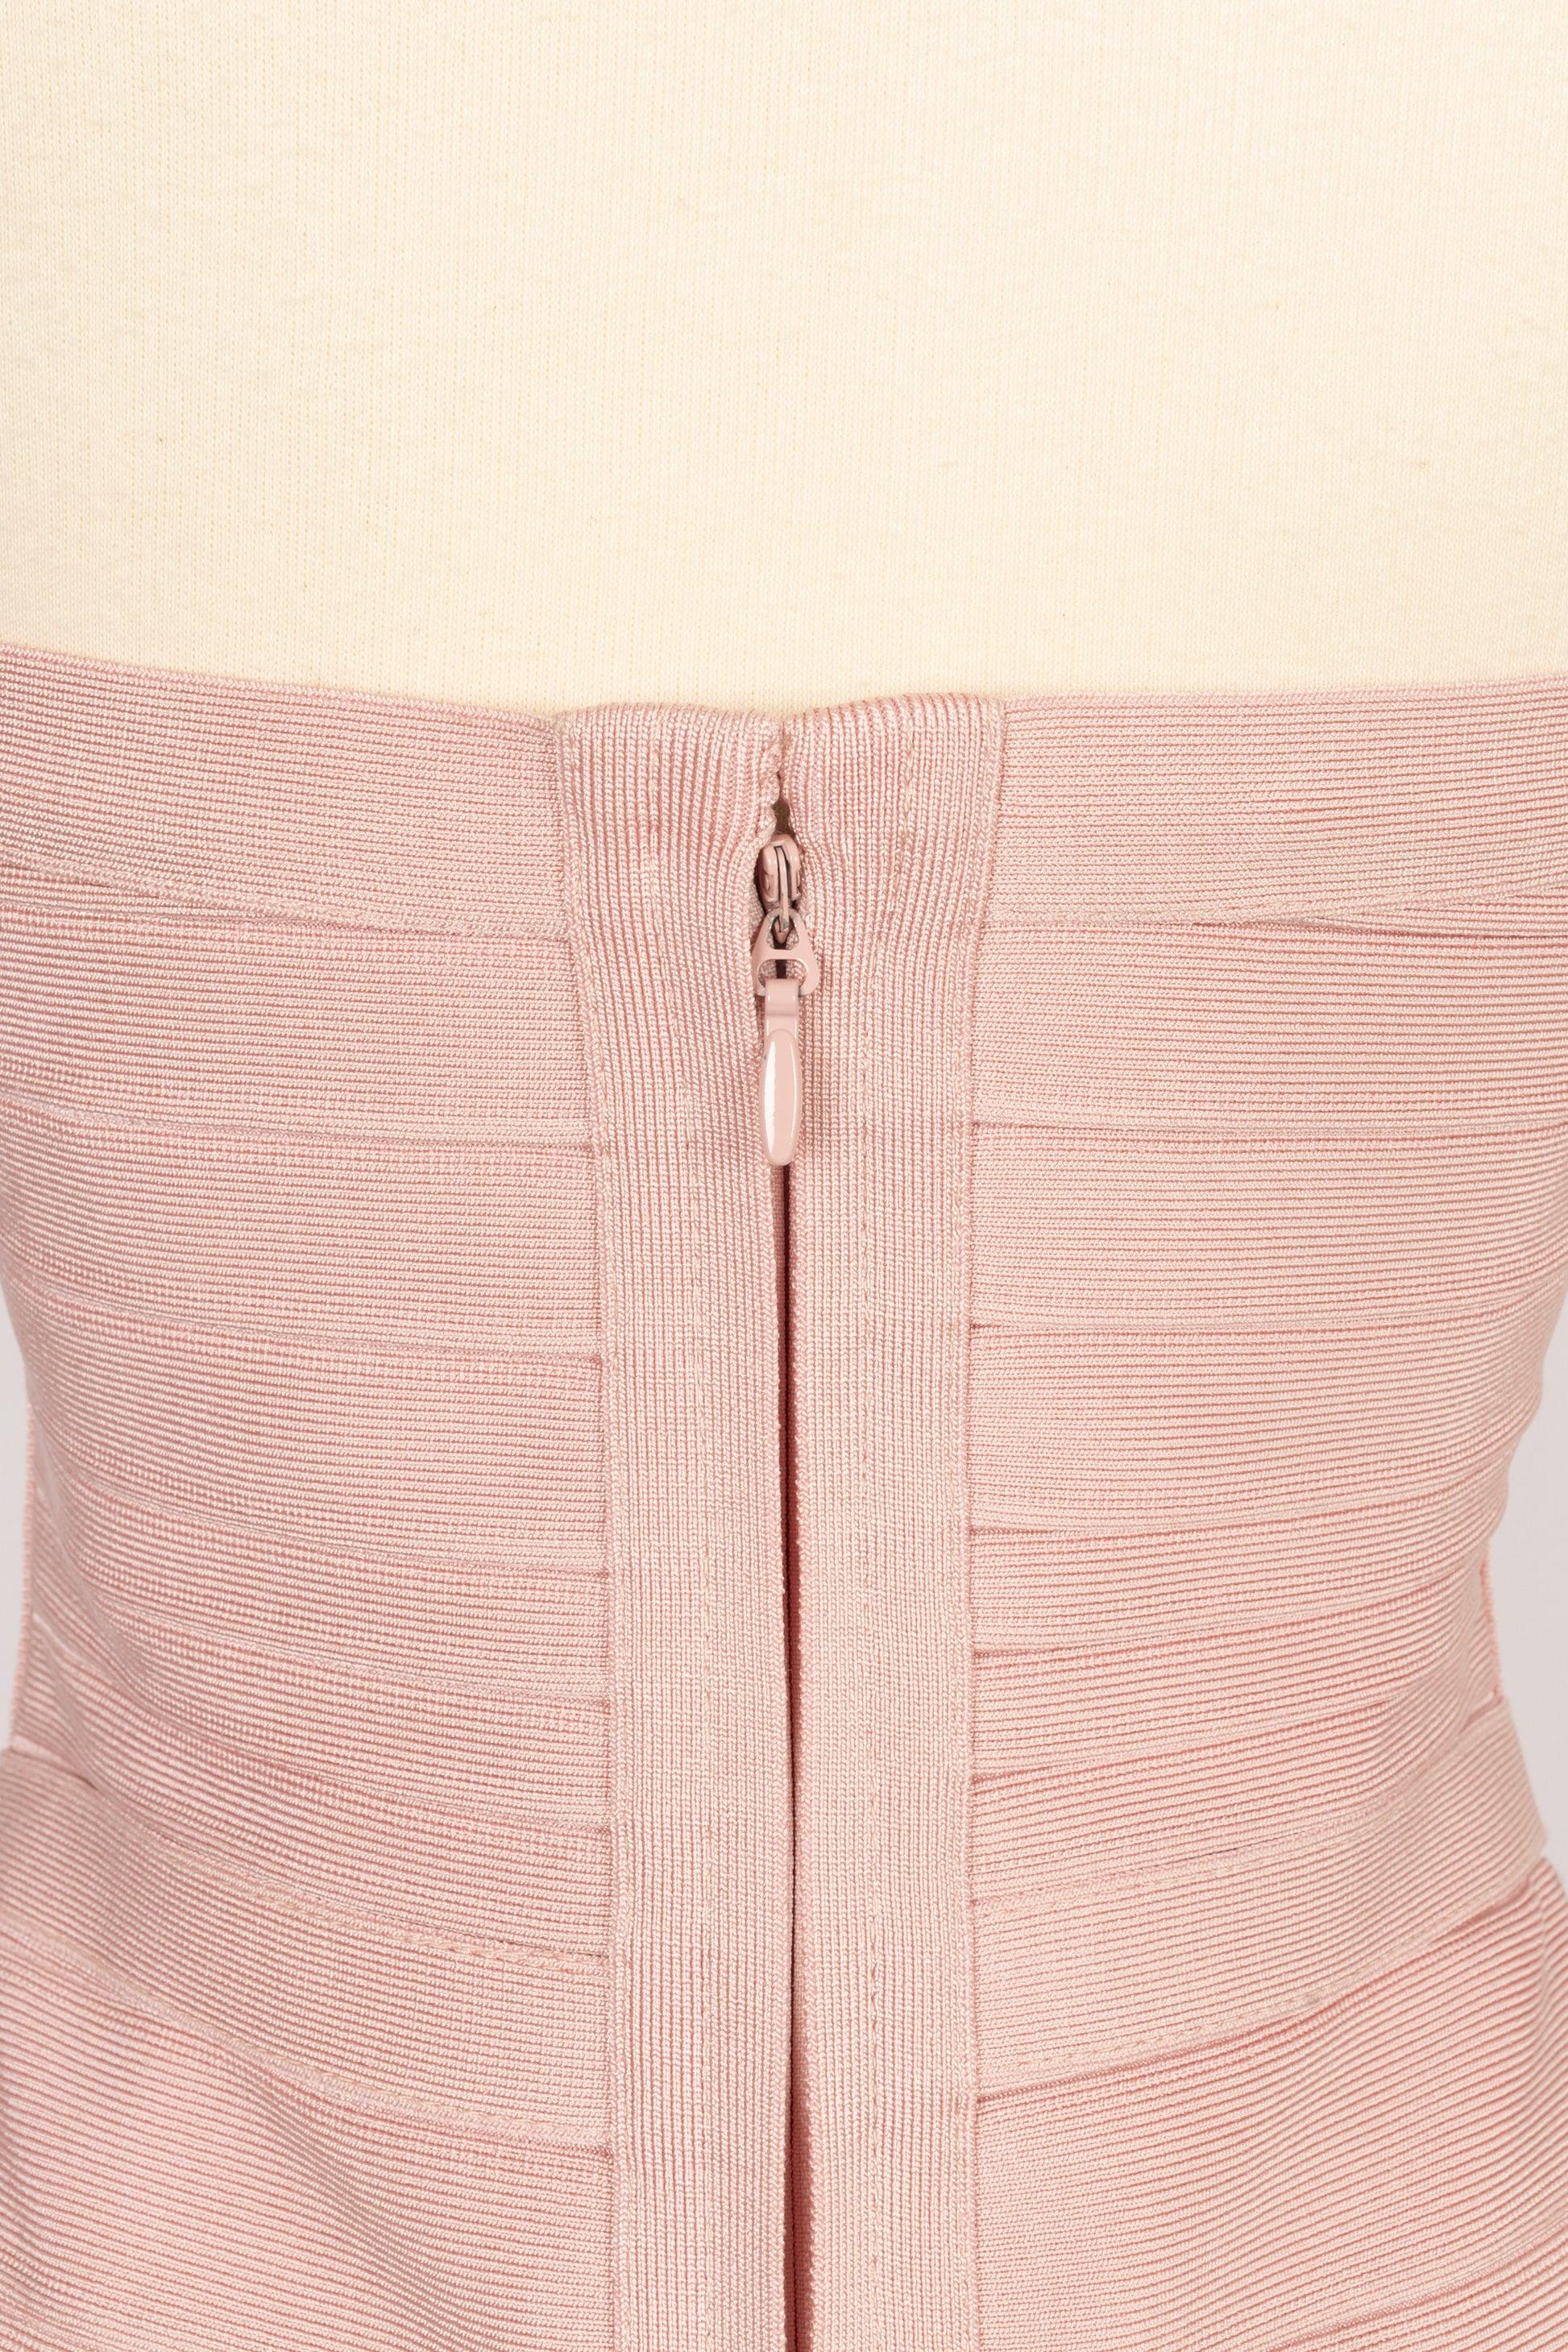 Hervé Léger Elasticated Powder Pink Dress For Sale 2